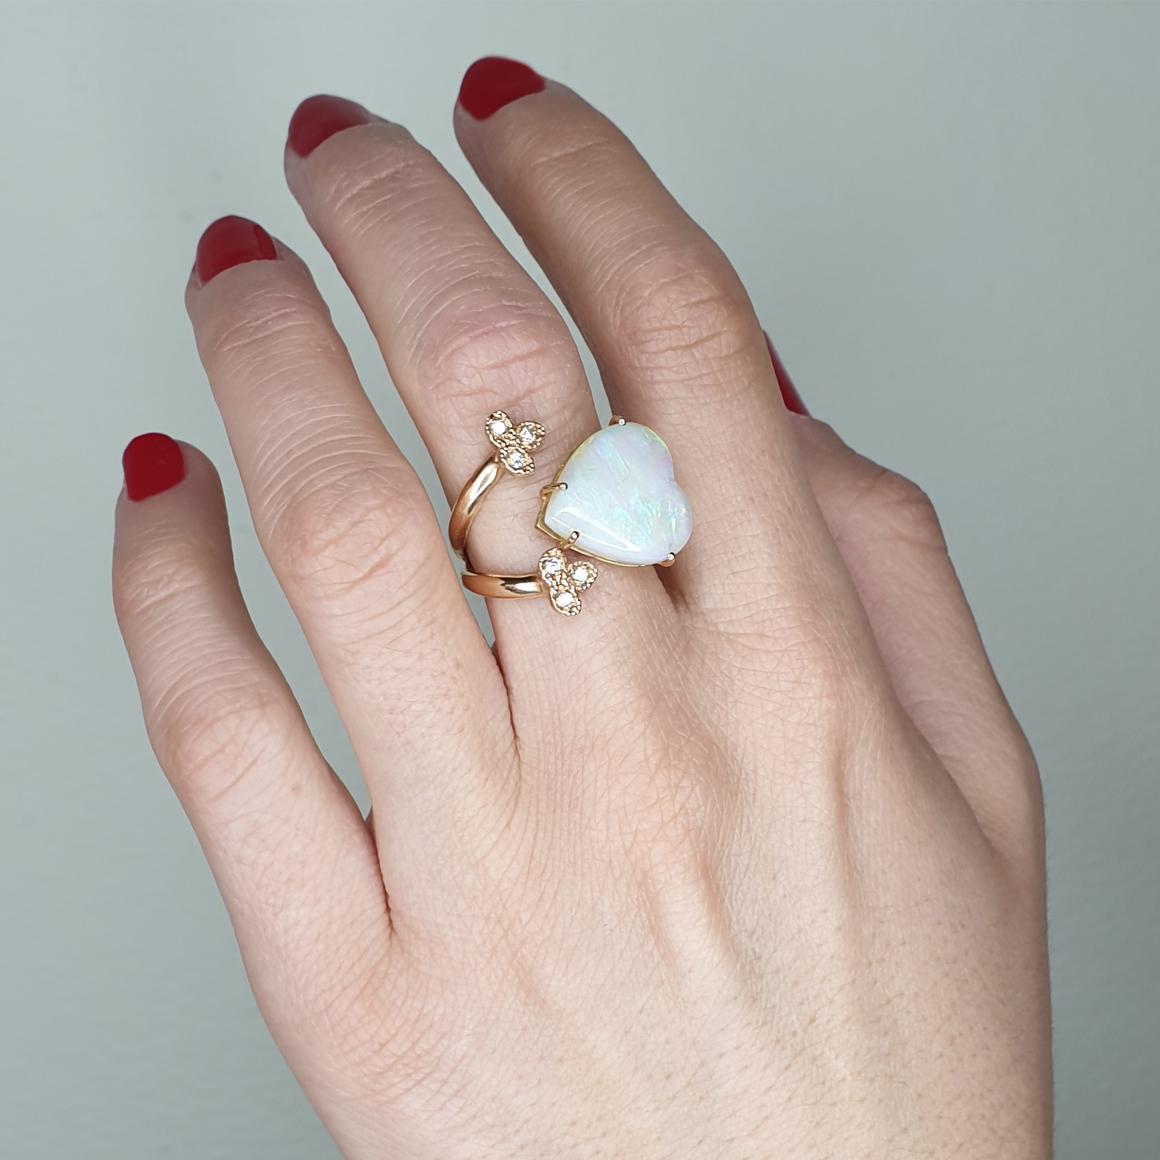 Glänzender und heller Opal, modernes Ringdesign und Handwerkskunst, handgefertigt in Italien von Stanoppi Jewellery seit 1948.
Ring aus 18k Roségold mit Opal  (Herz-Cabochon-Schliff, Größe: 14x14mm) und  weiß Diamanten cts 0,08 VS Farbe G/H.   